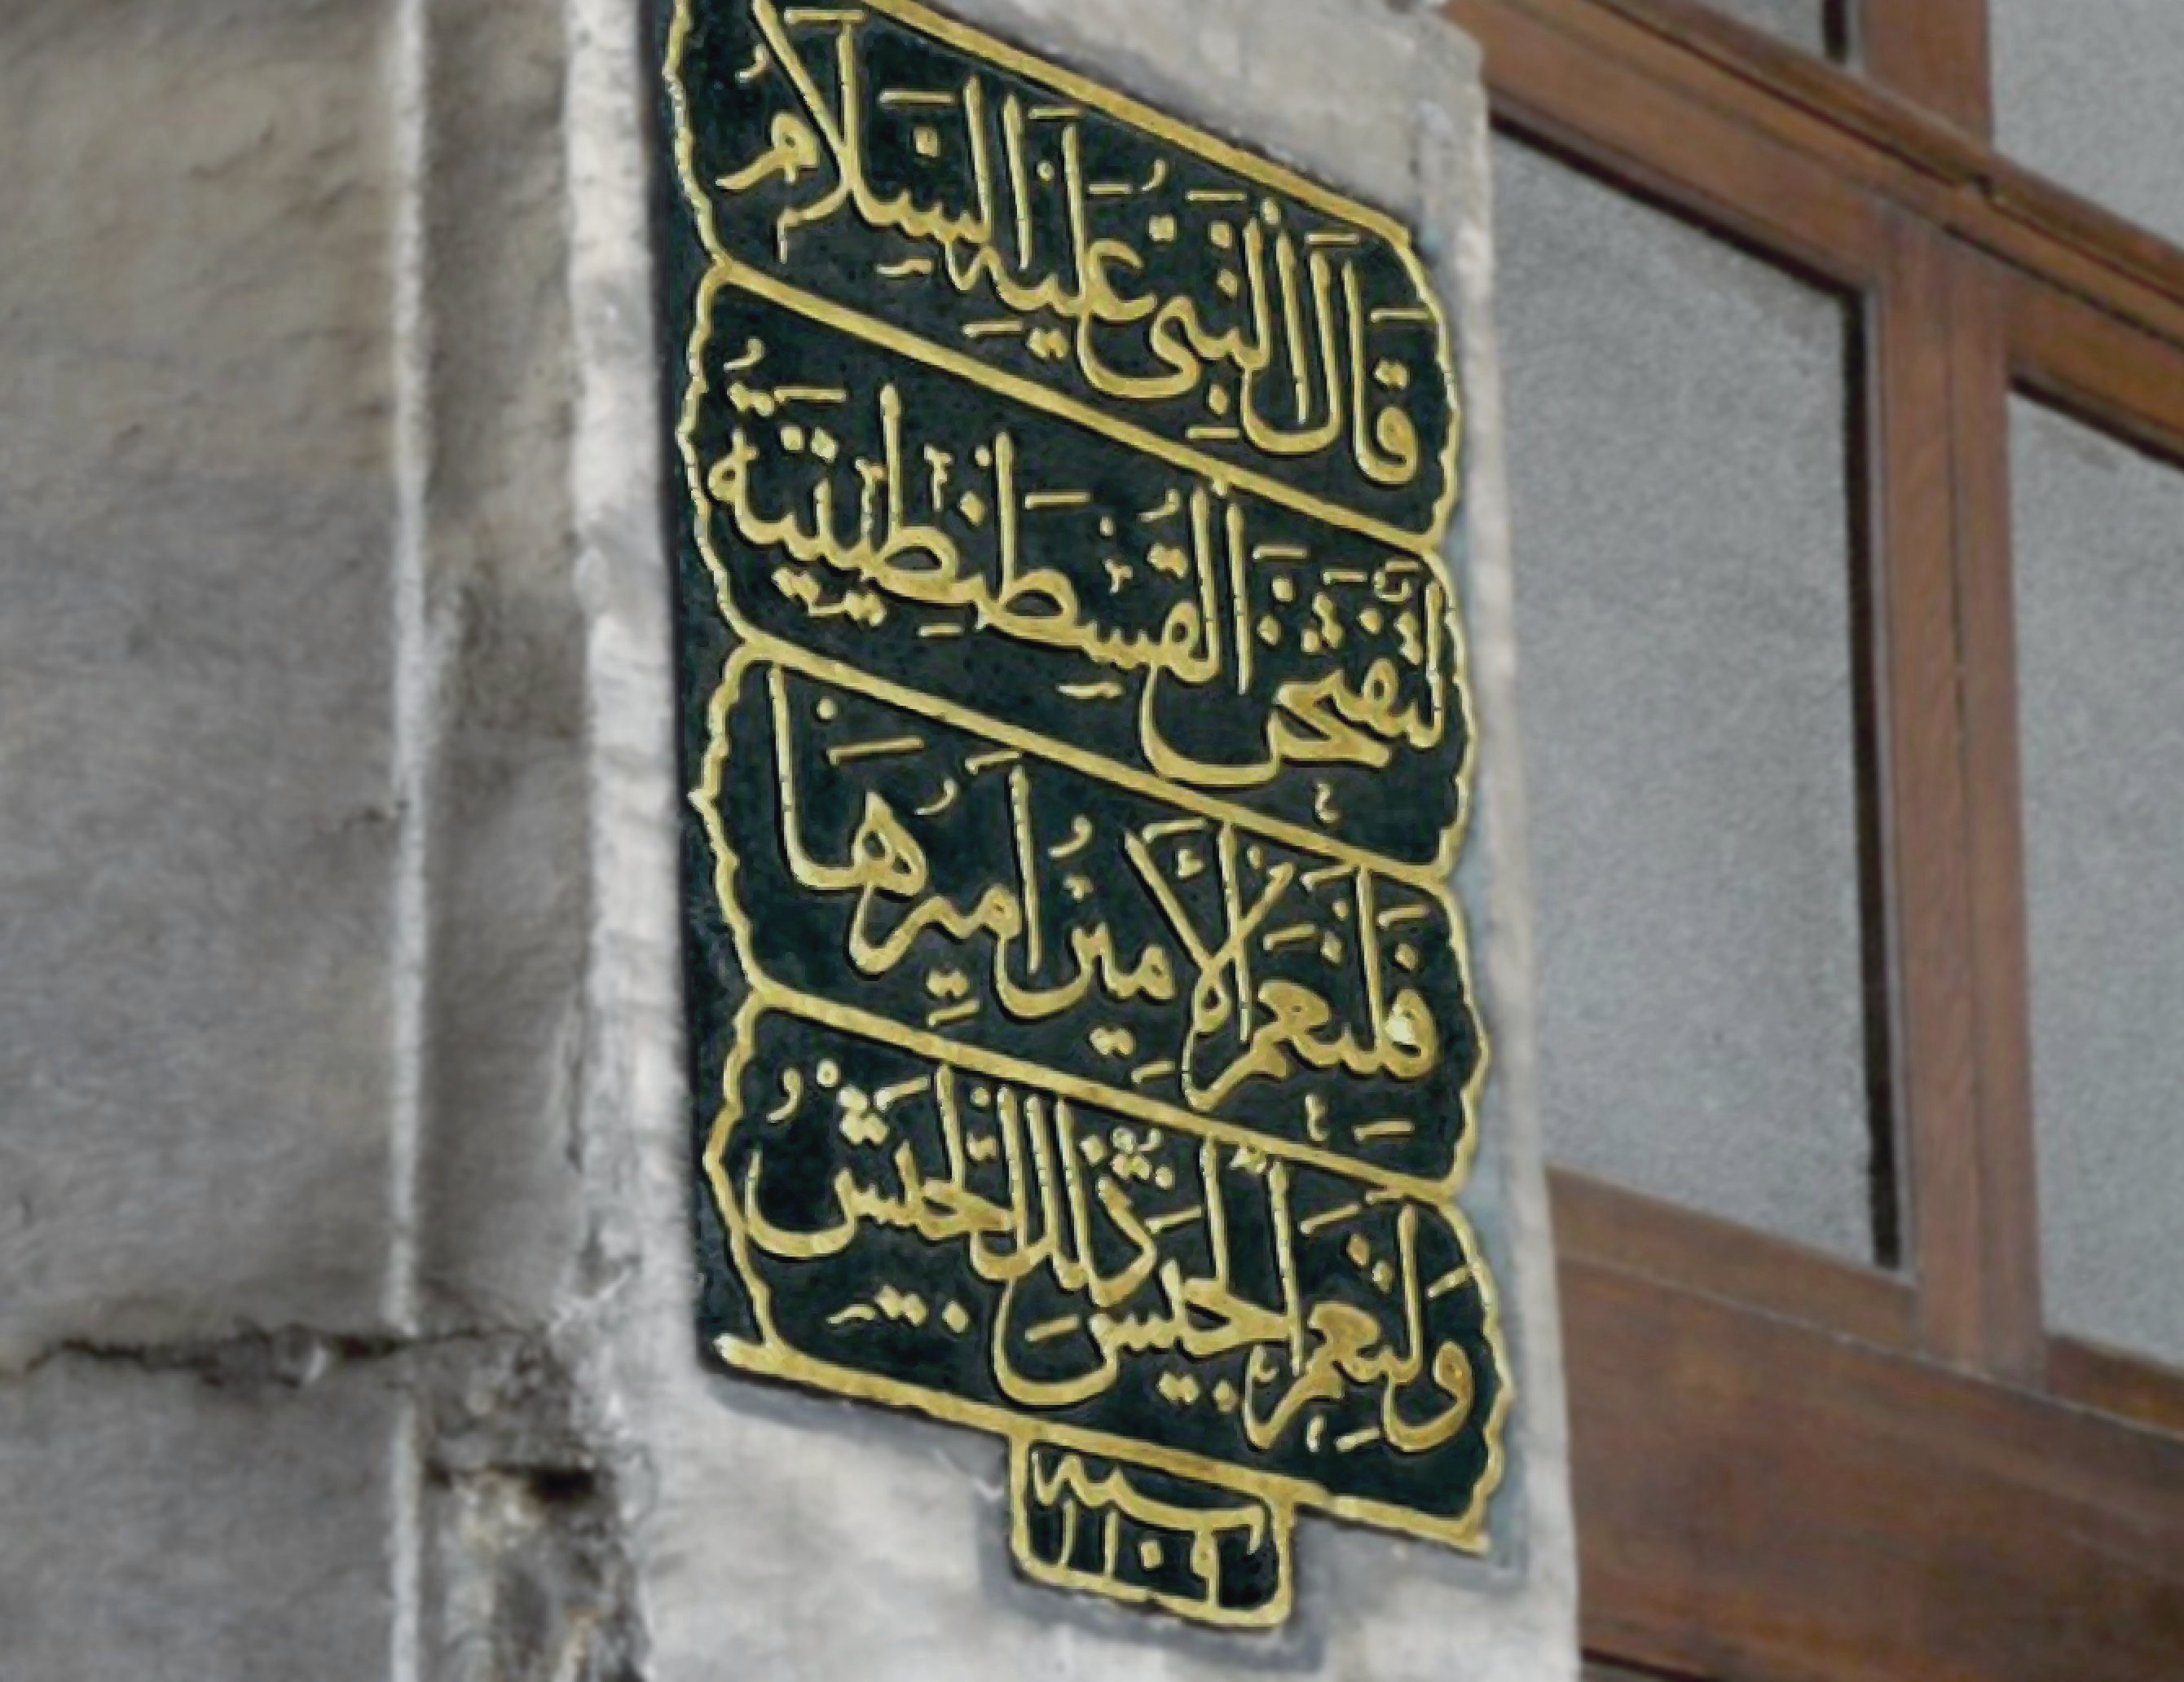 فتح الأندلس : عقبات في طريق المسلمين قبل الفتح Hagia_Sophia_-_Muhammad's_prophecy